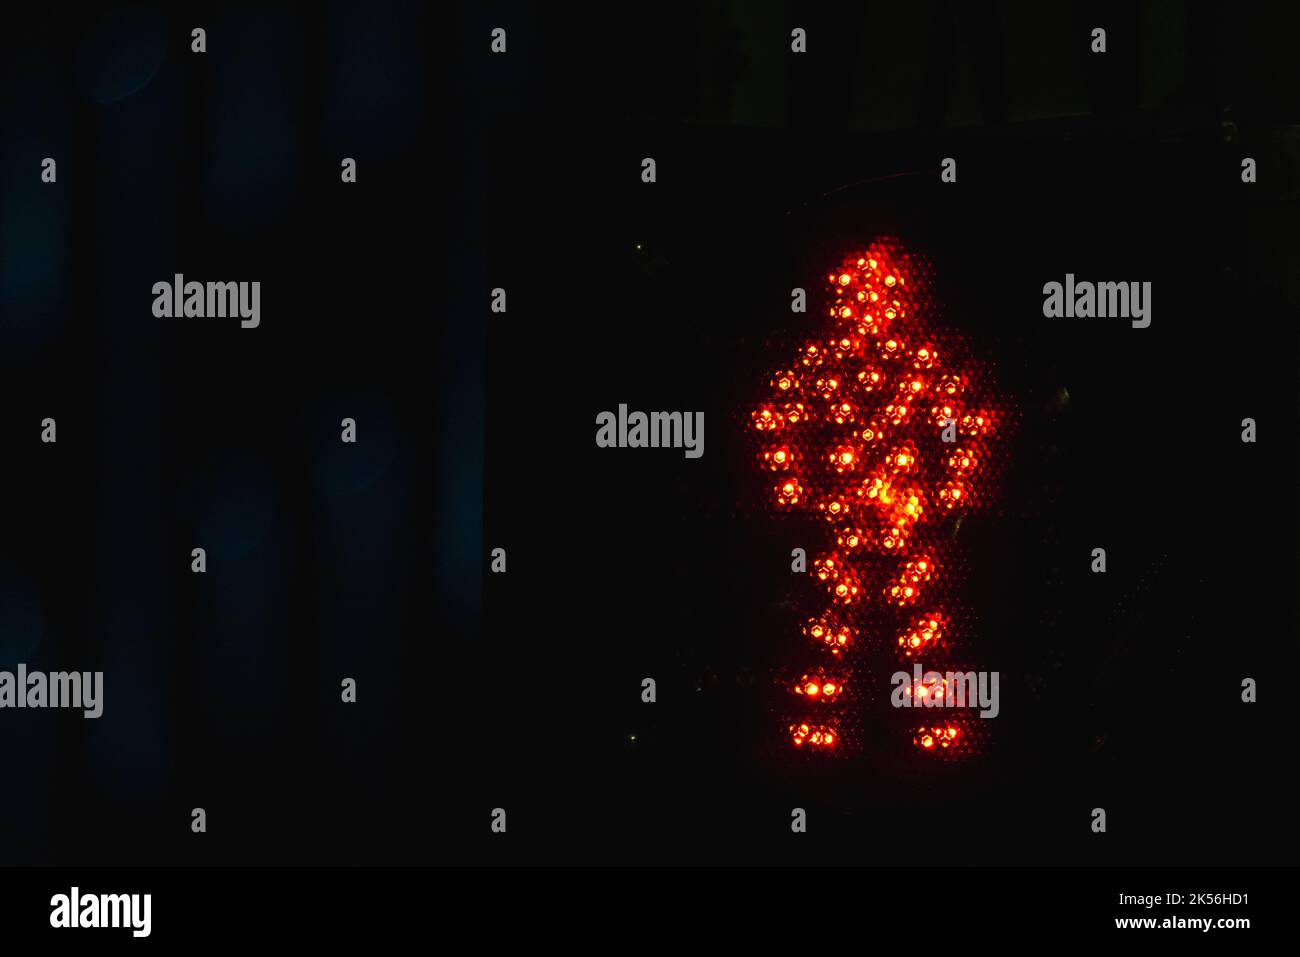 El semáforo de peatones muestra una señal de stop roja con un cartel LED de hombre sobre fondo negro nocturno Foto de stock